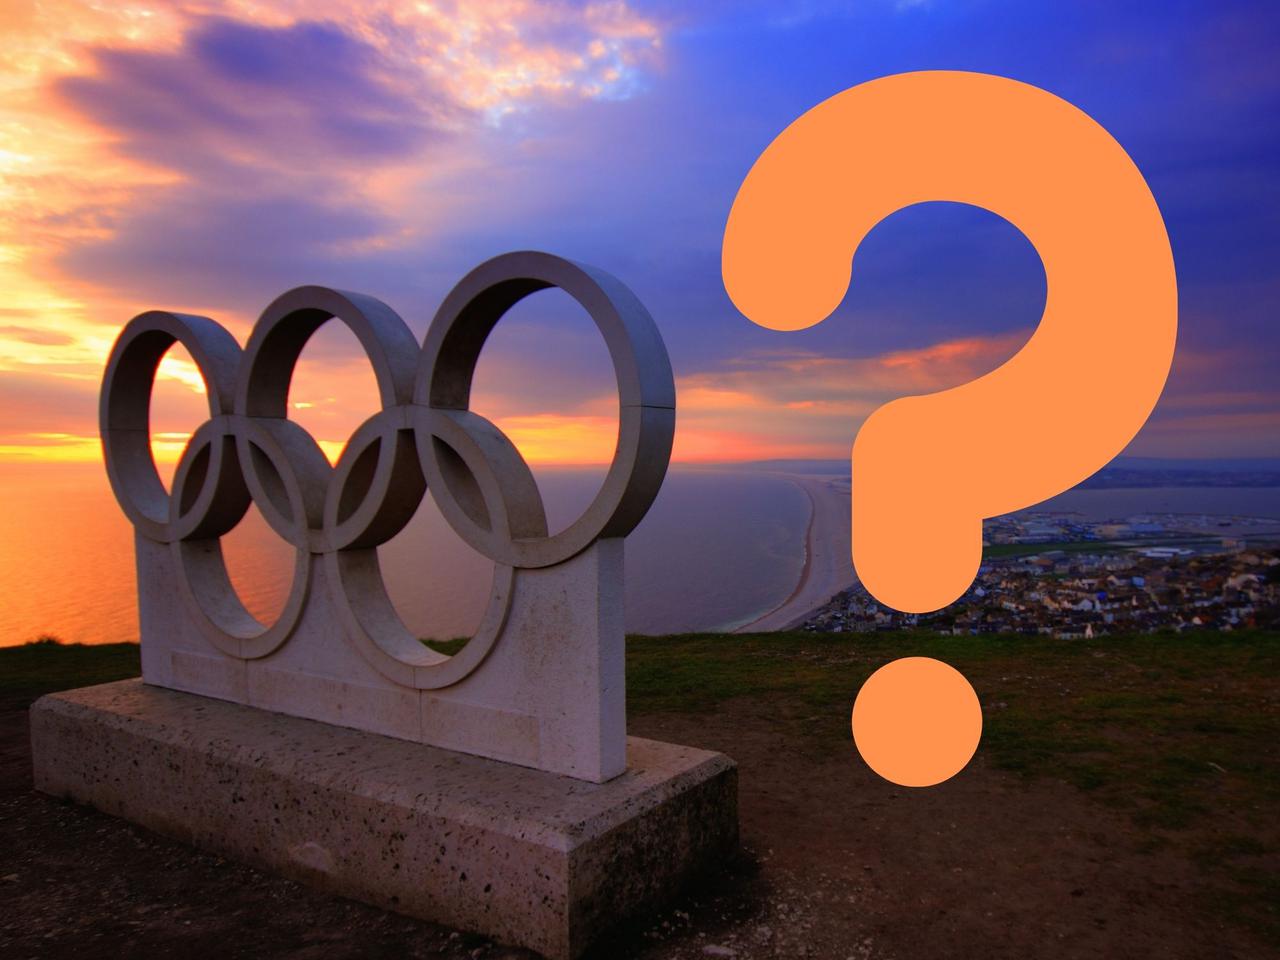 Olimpiada 2021: DRAMATYCZNIE rośli liczba zakażeń: Jest najwięcej od stycznia!